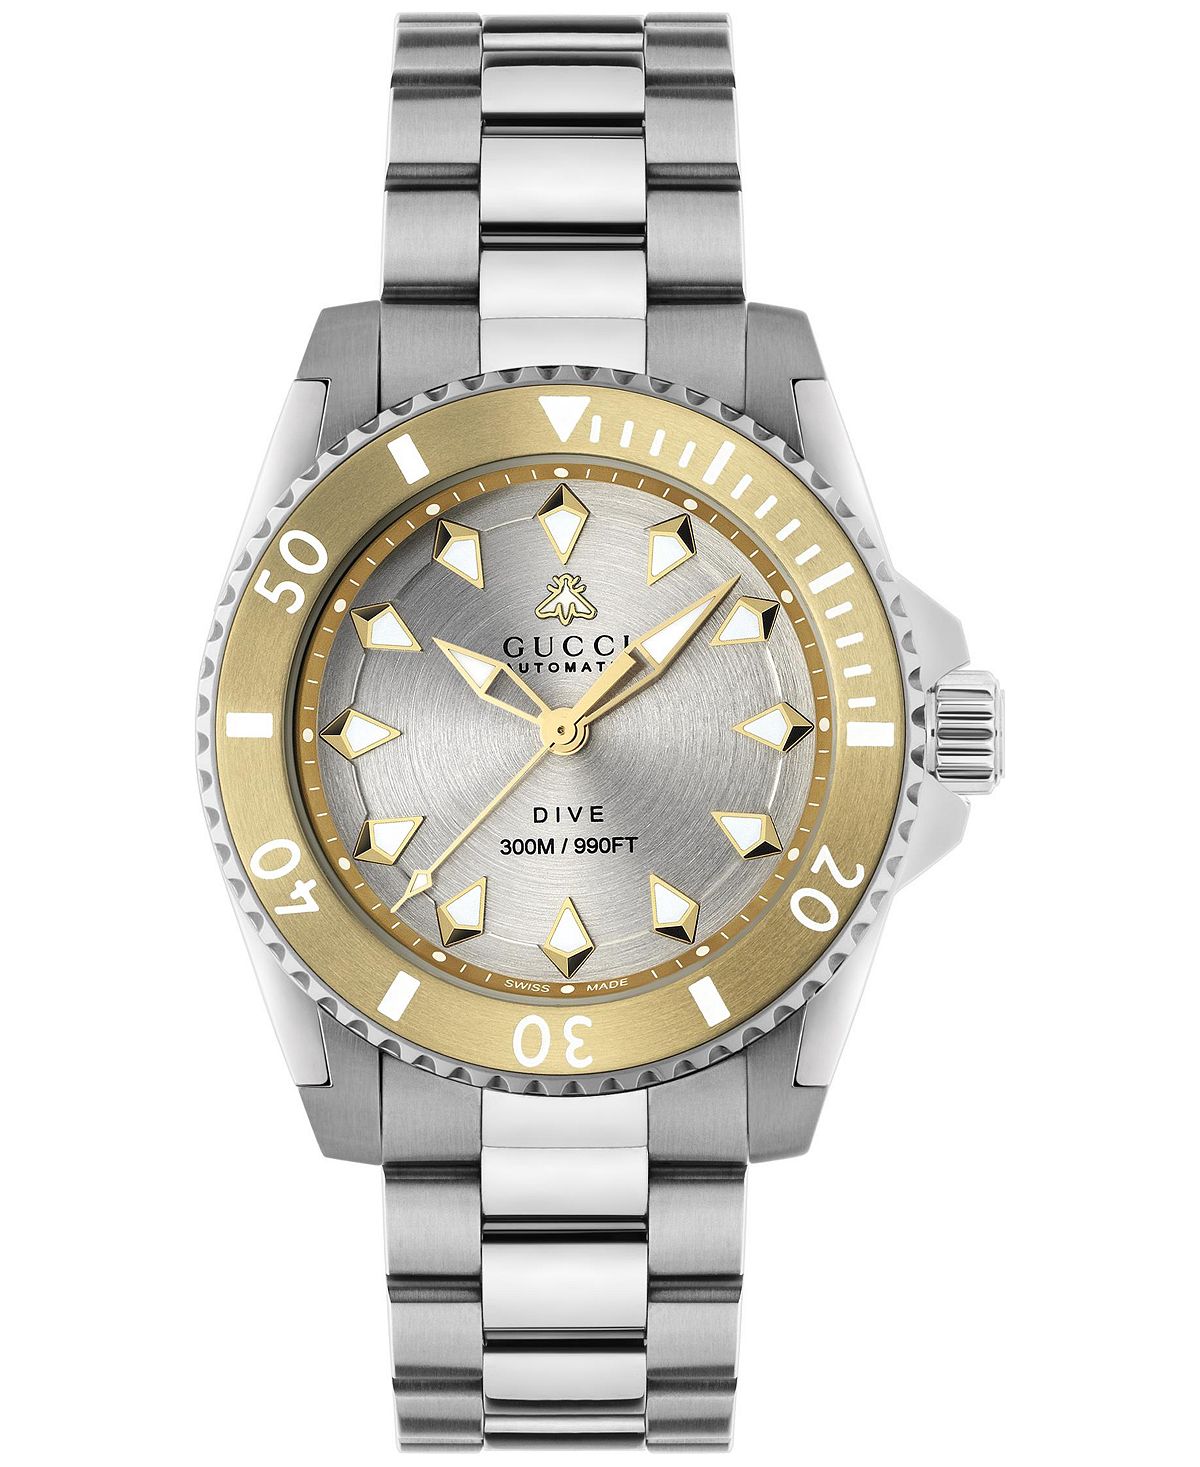 Мужские швейцарские автоматические часы для дайвинга с браслетом из нержавеющей стали, 40 мм Gucci цена и фото